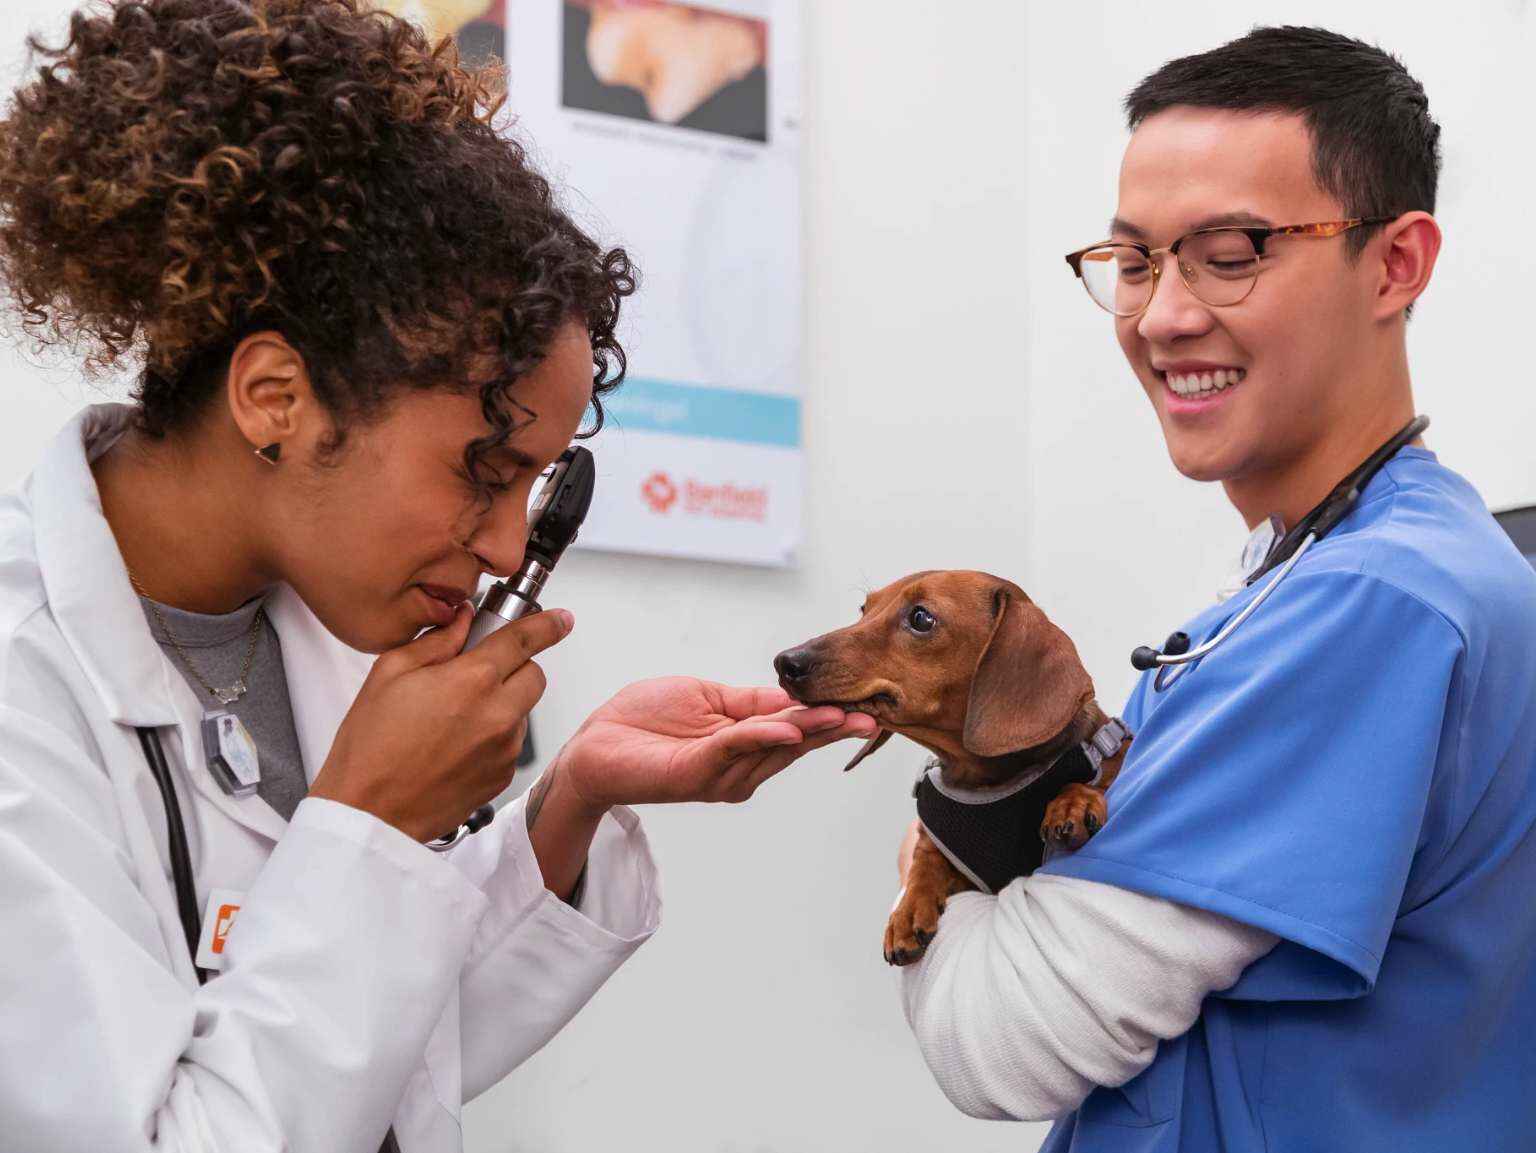 Una médica veterinaria le realiza un examen ocular a un perro salchicha, que está en los brazos de un asistente veterinario.